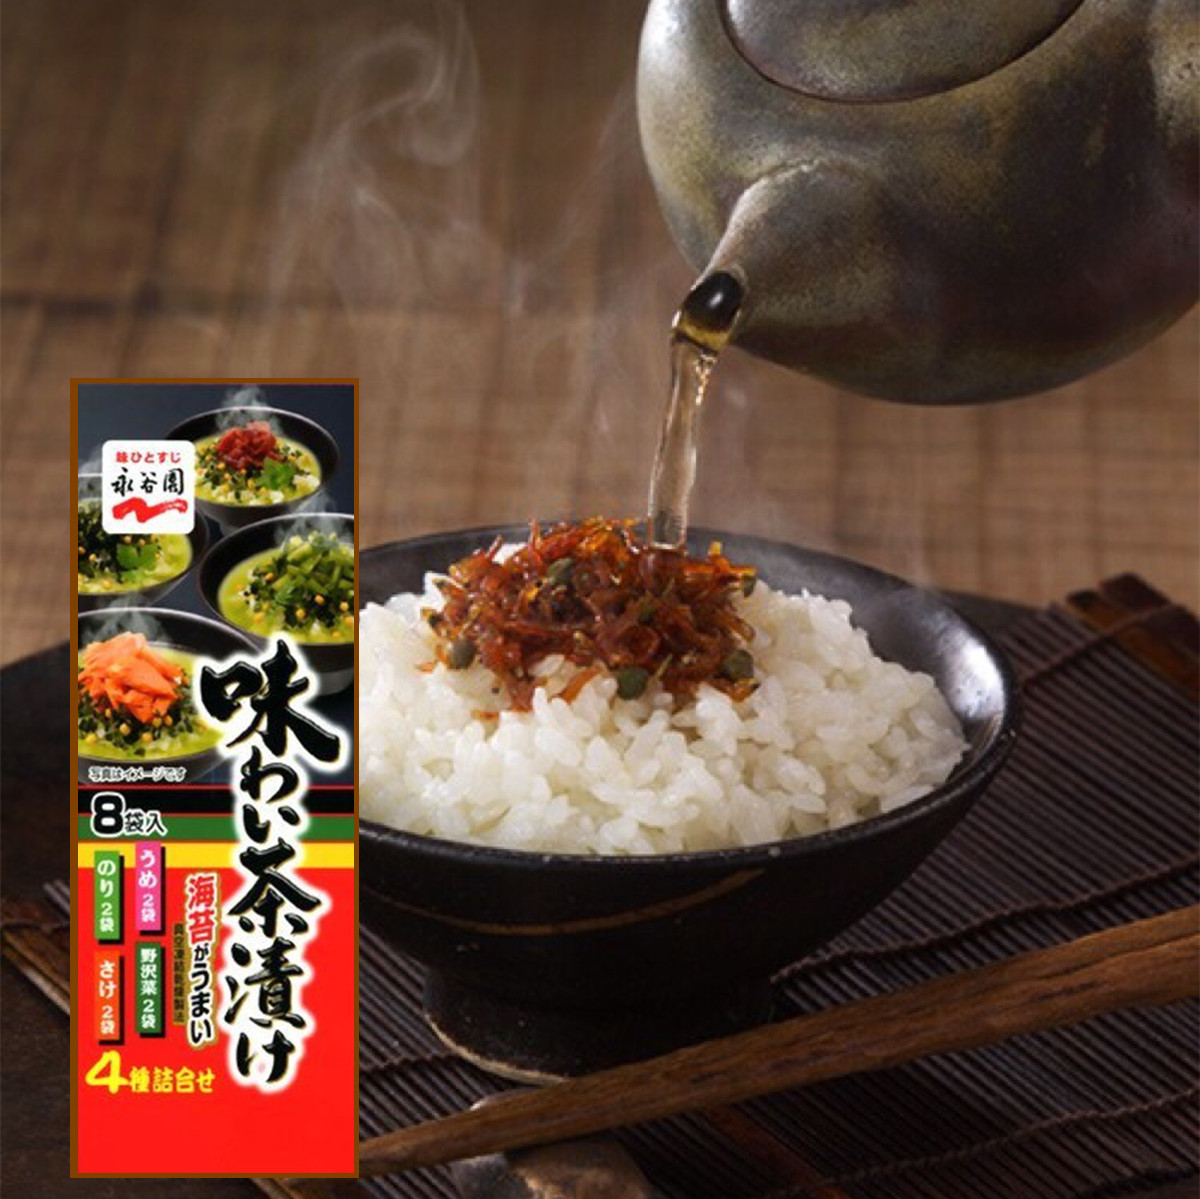 日本泡饭汤料原装进口永谷园拌饭料茶泡饭汤料四种味道8袋入红